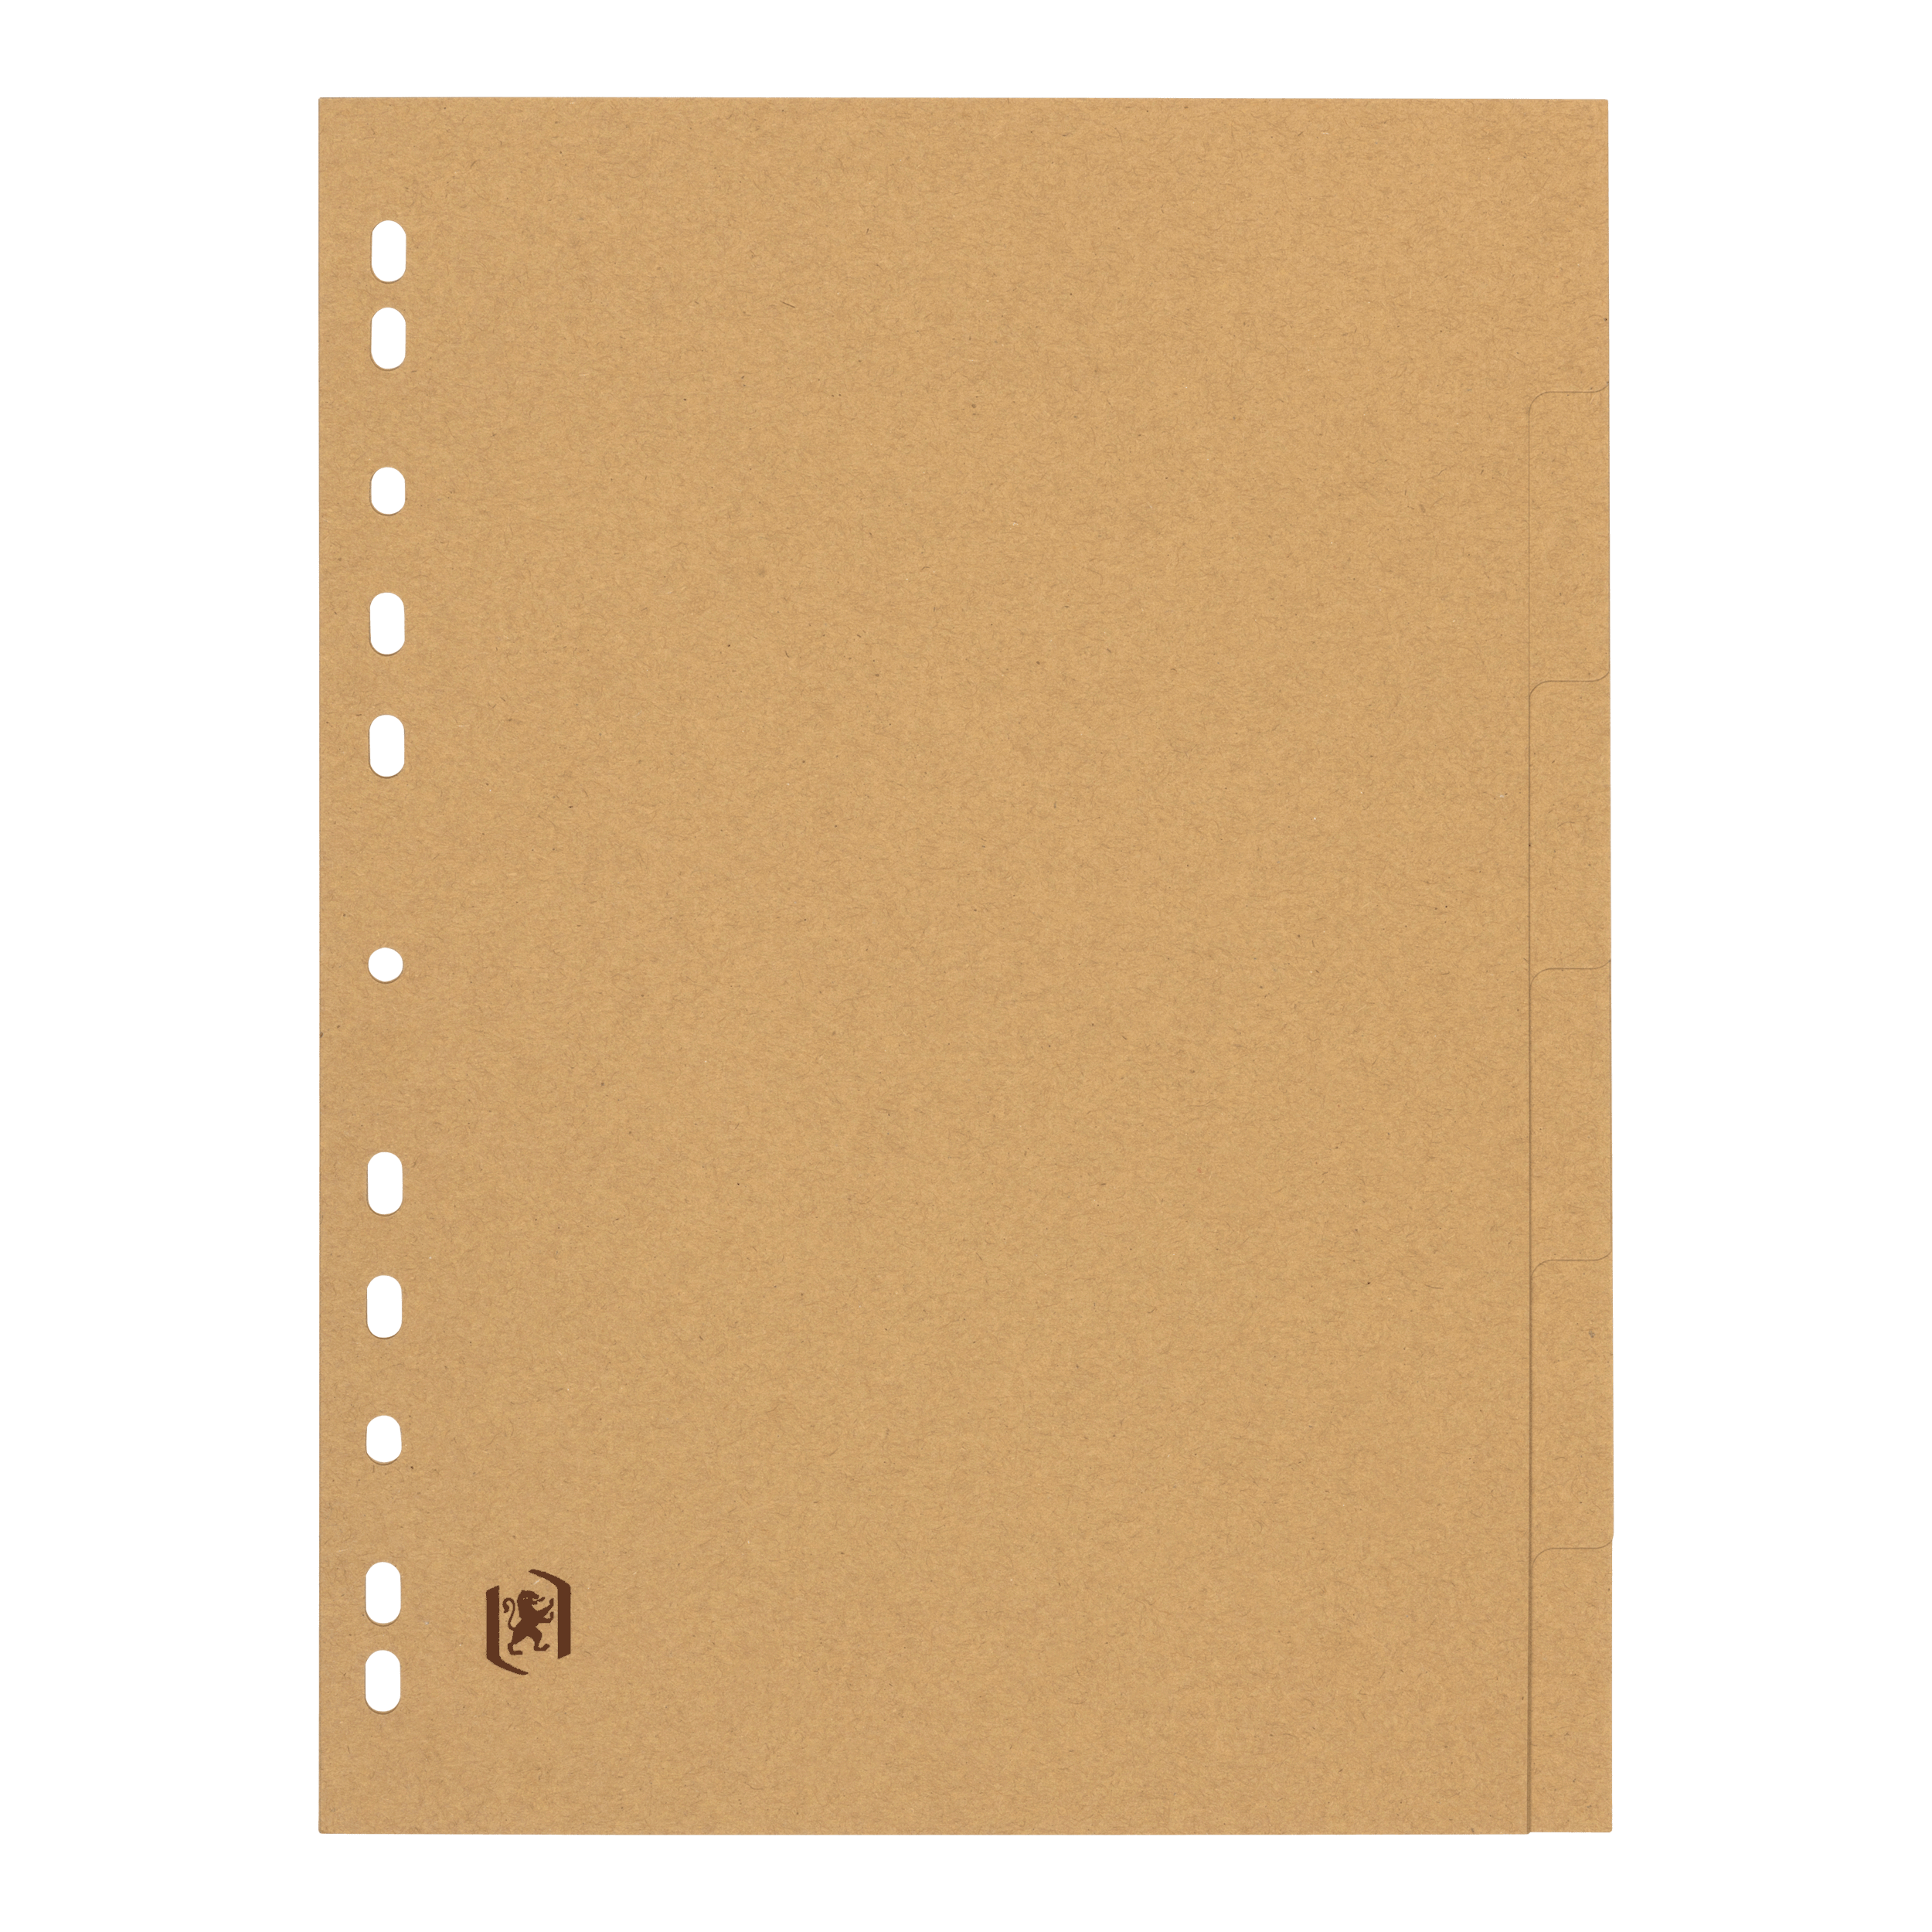 Register TOUAREG, Papier (TCF), 290 g/m², blanko, Eurolochung, A4, volle Höhe, 22,5 x 30 cm, 6 Blatt, beige